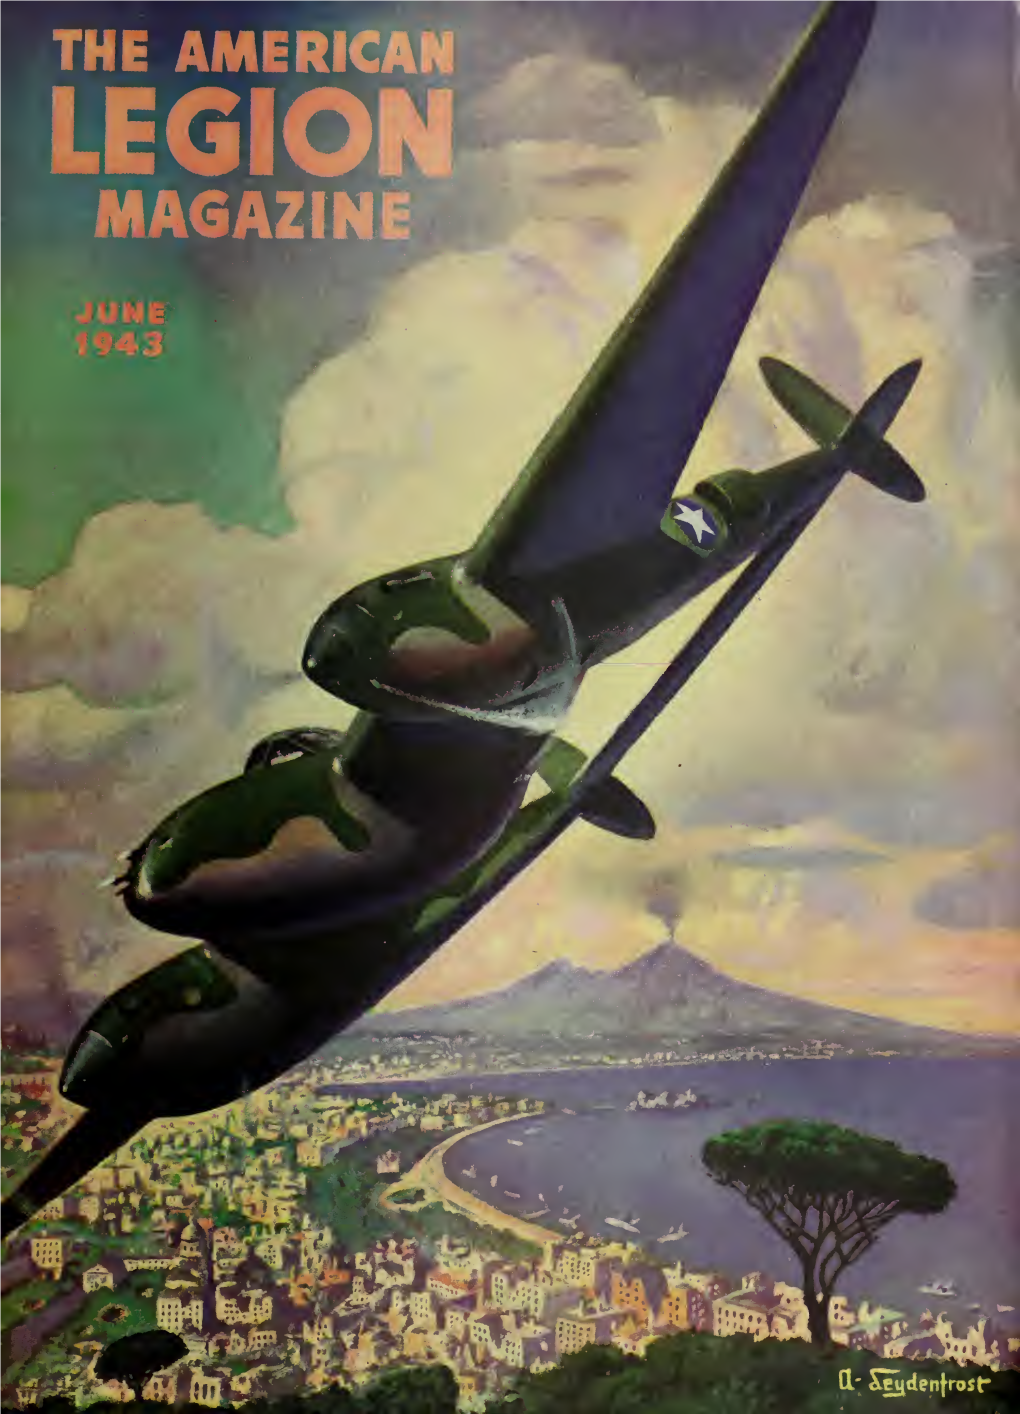 The American Legion Magazine [Volume 34, No. 6 (June 1943)]